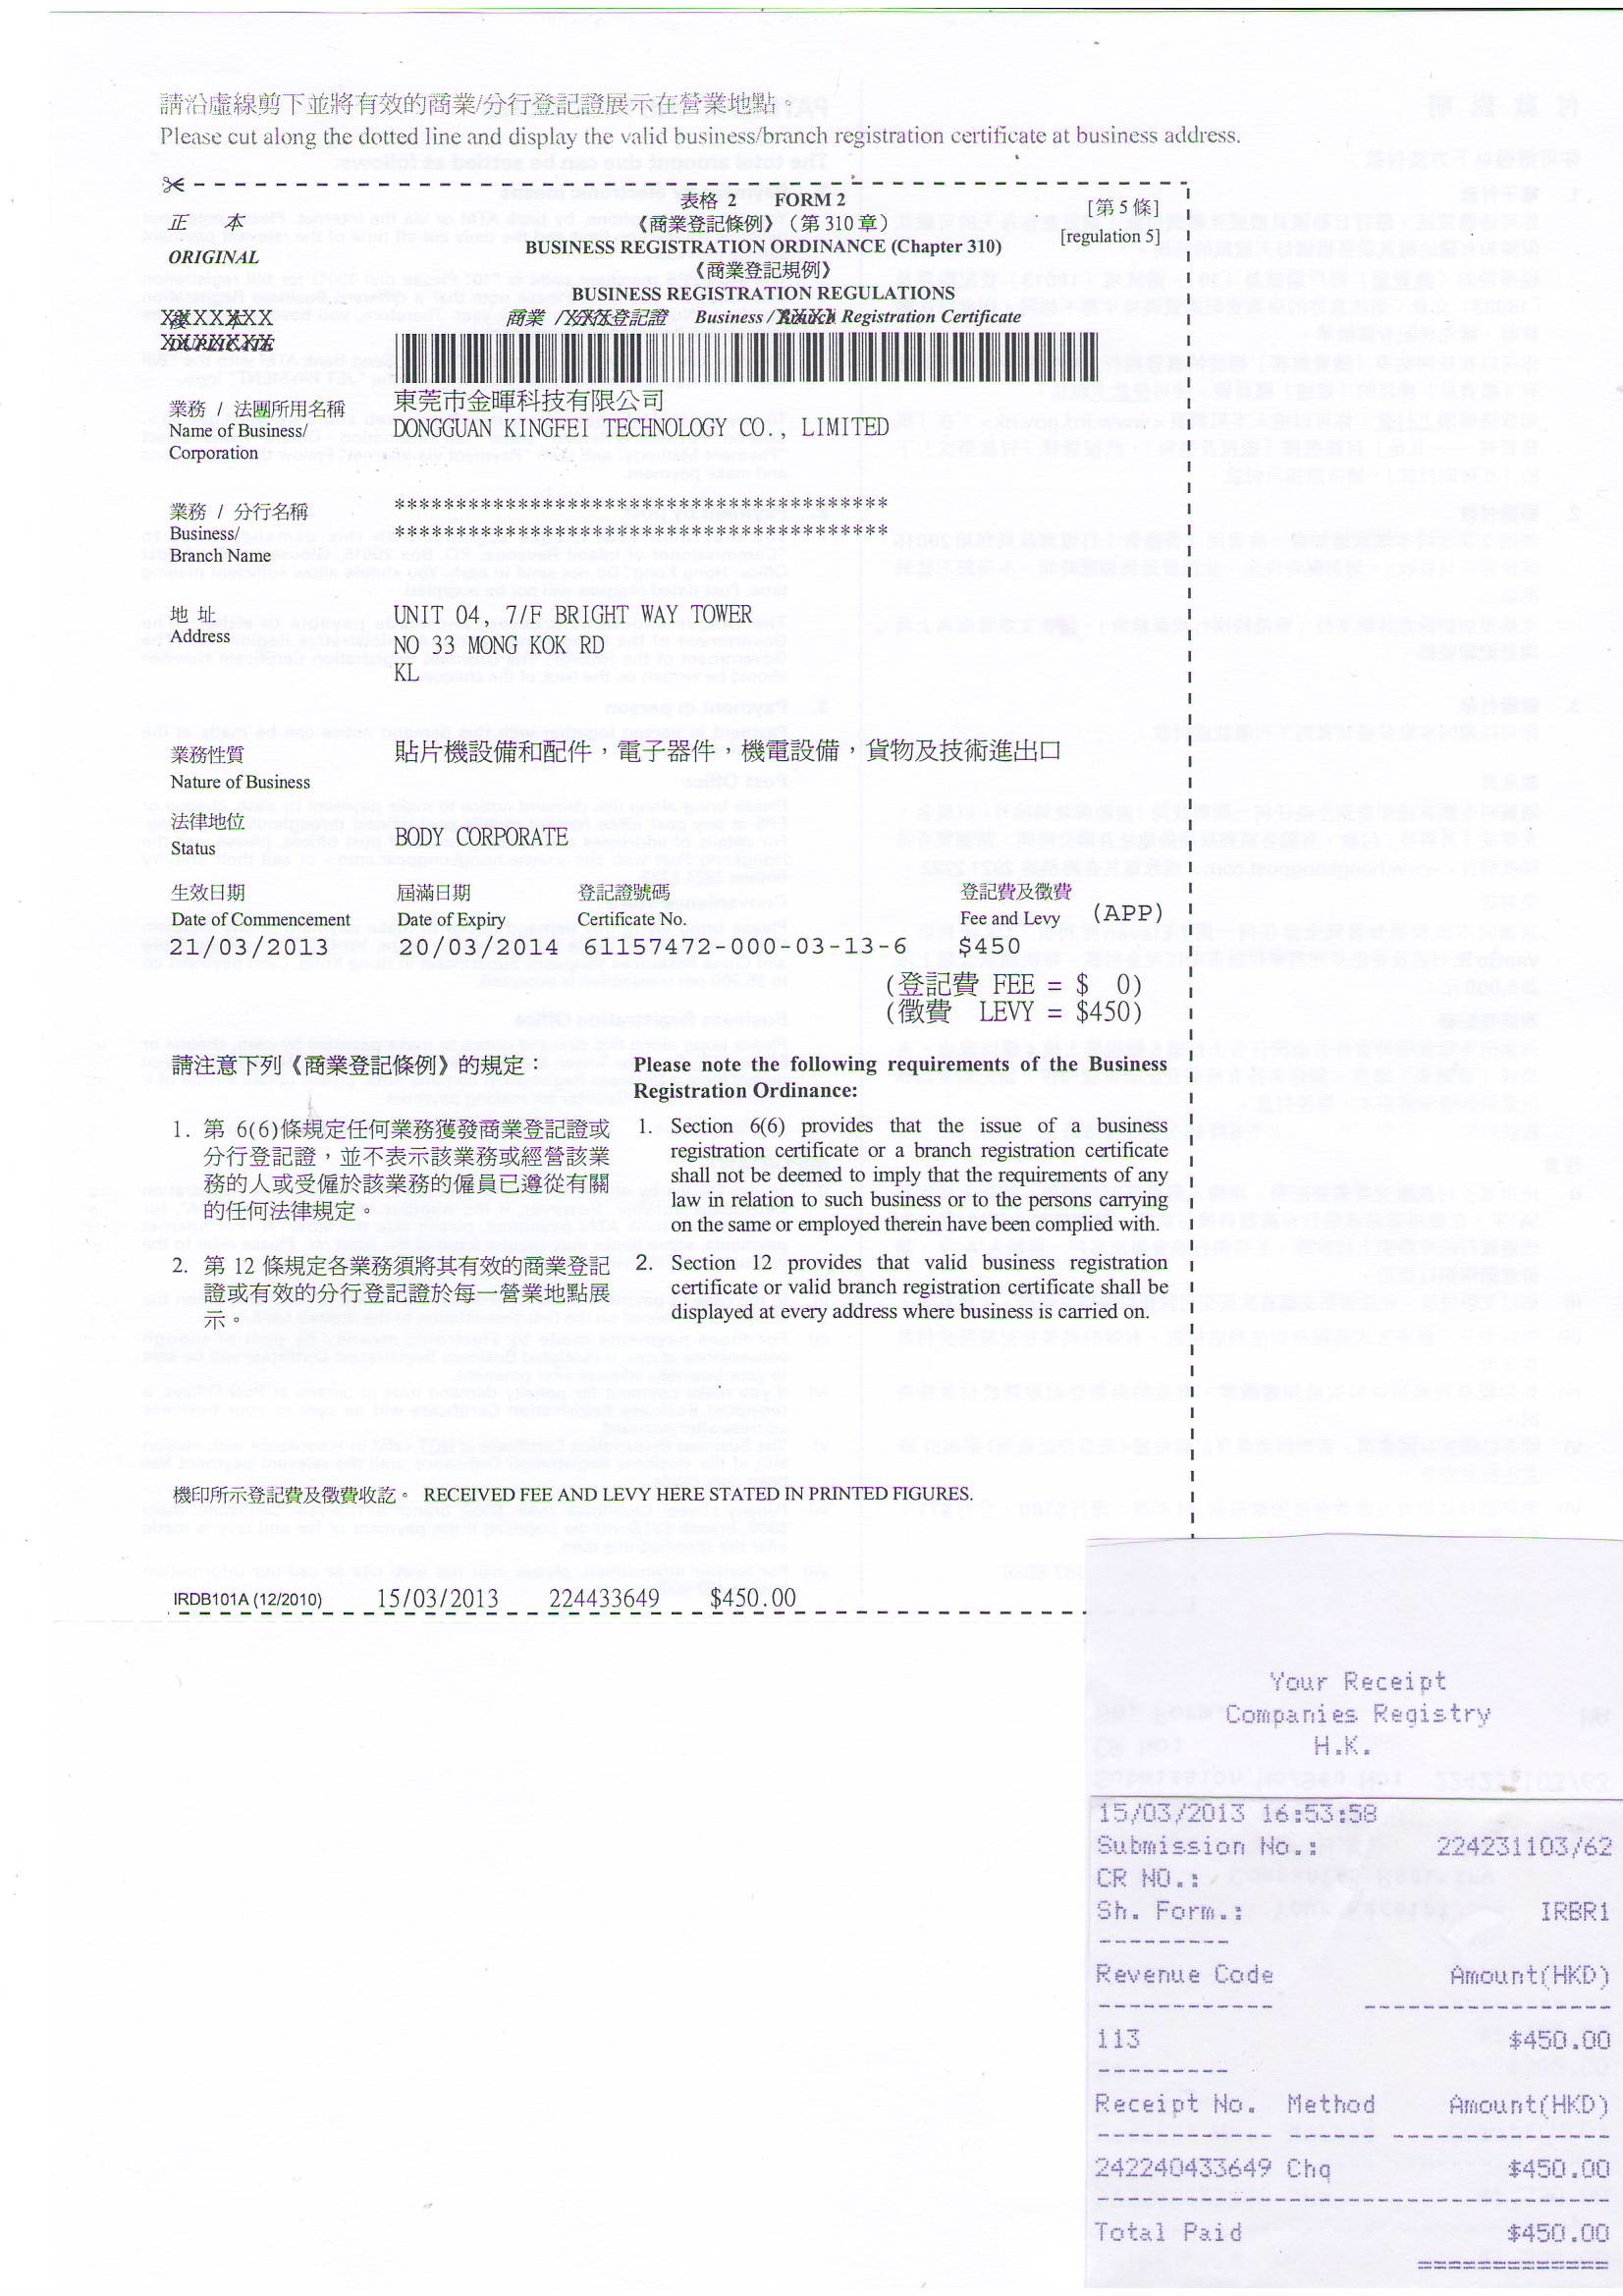 چین Dongguan Kingfei Technology Co.,Limited گواهینامه ها